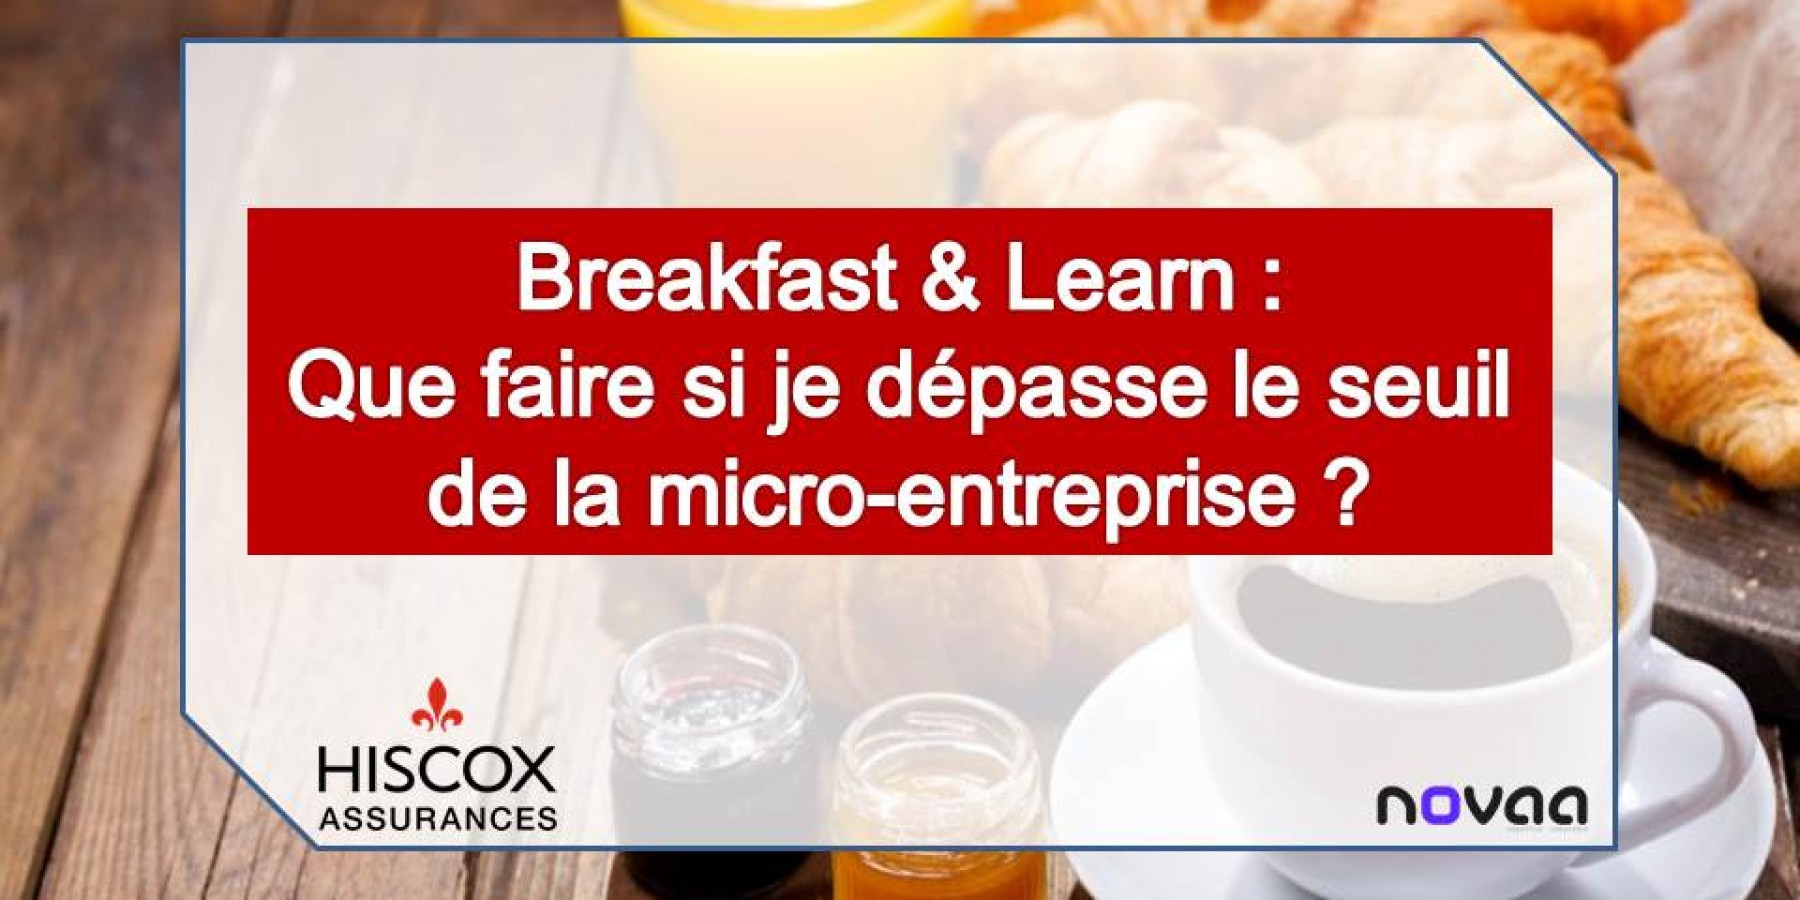 Breakfast & Learn: que faire si je dépasse le seuil de la micro-entreprise